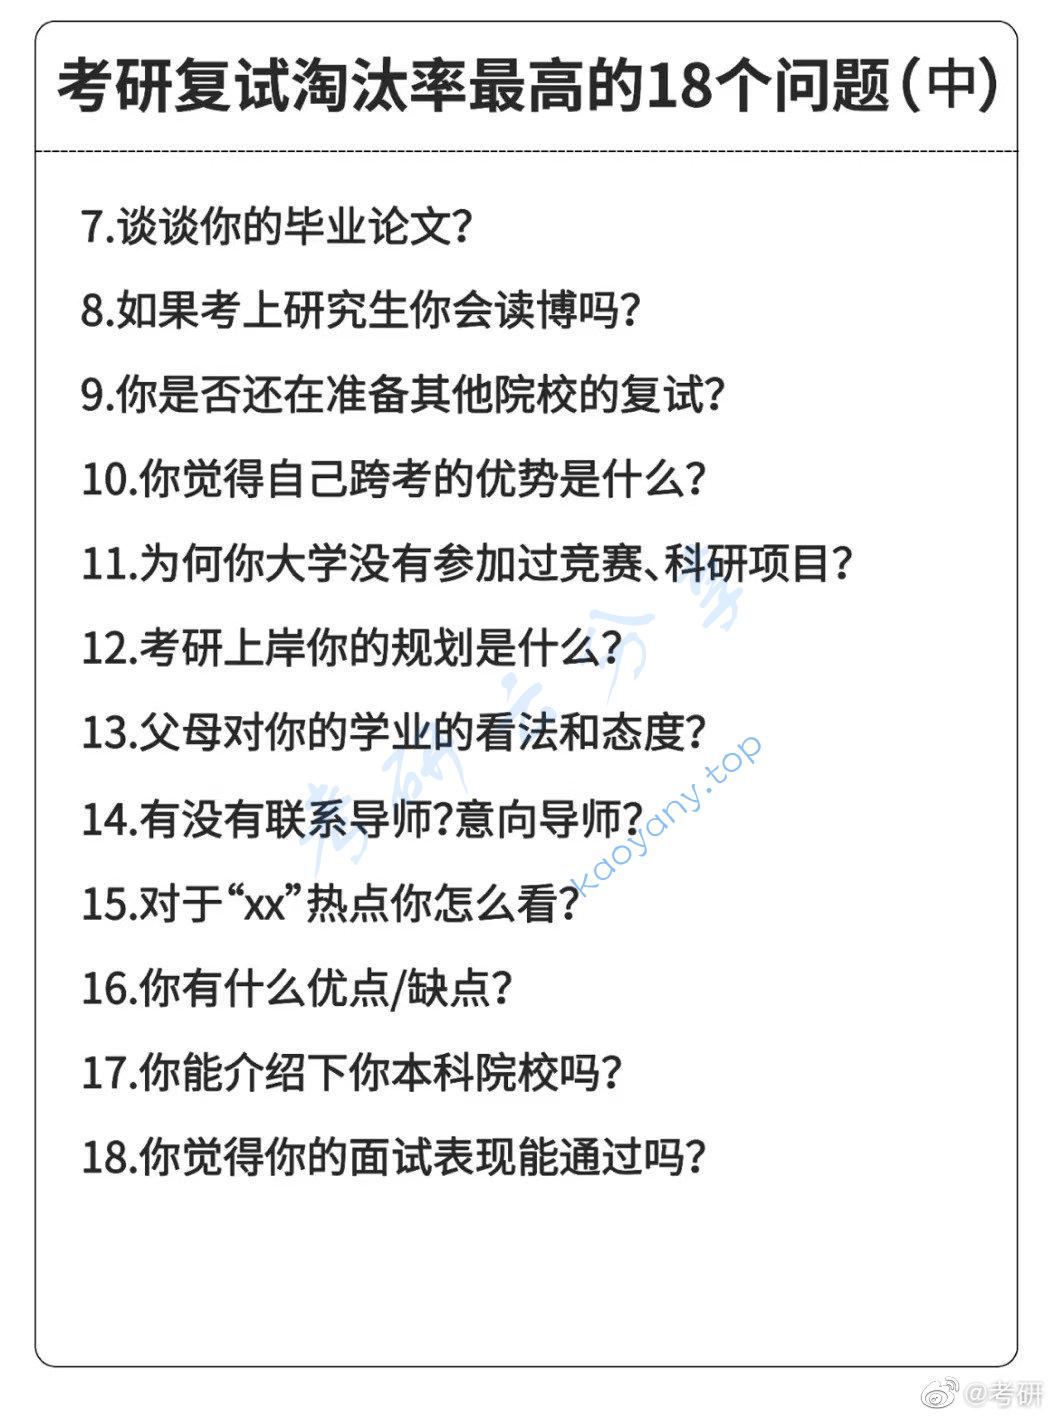 考研复试淘汰率最高的18个问题,fa861c29632753aa8e7635e4e3135d97.jpg,考研复试,中文常见问题,第2张